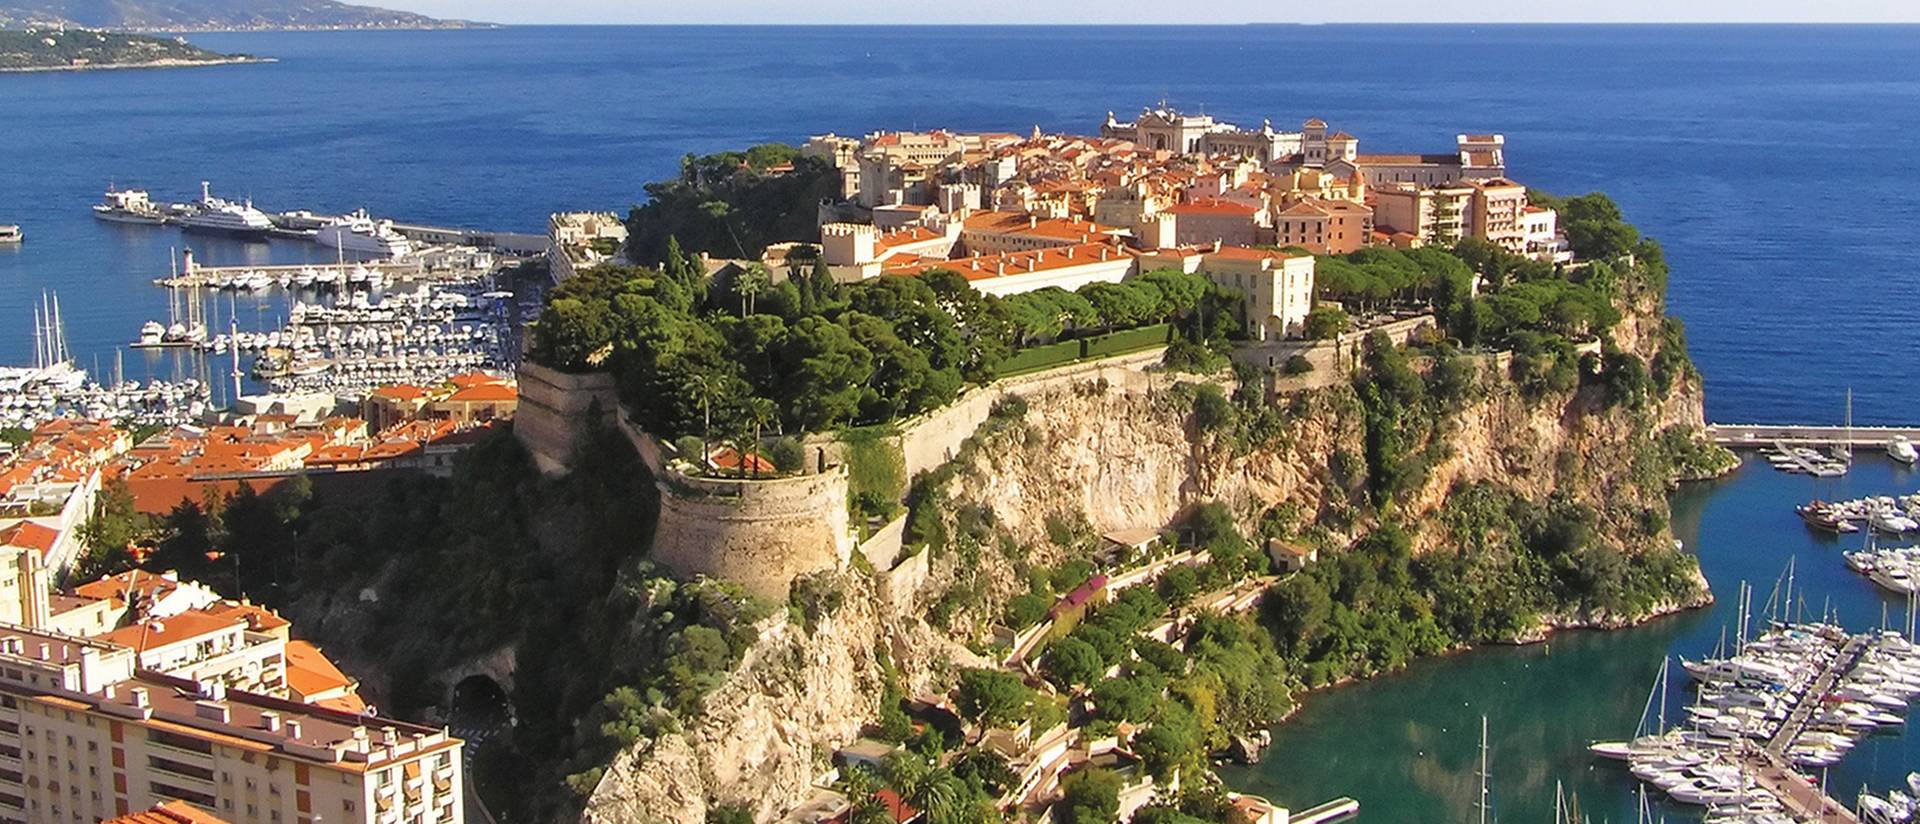 View of Monaco coast